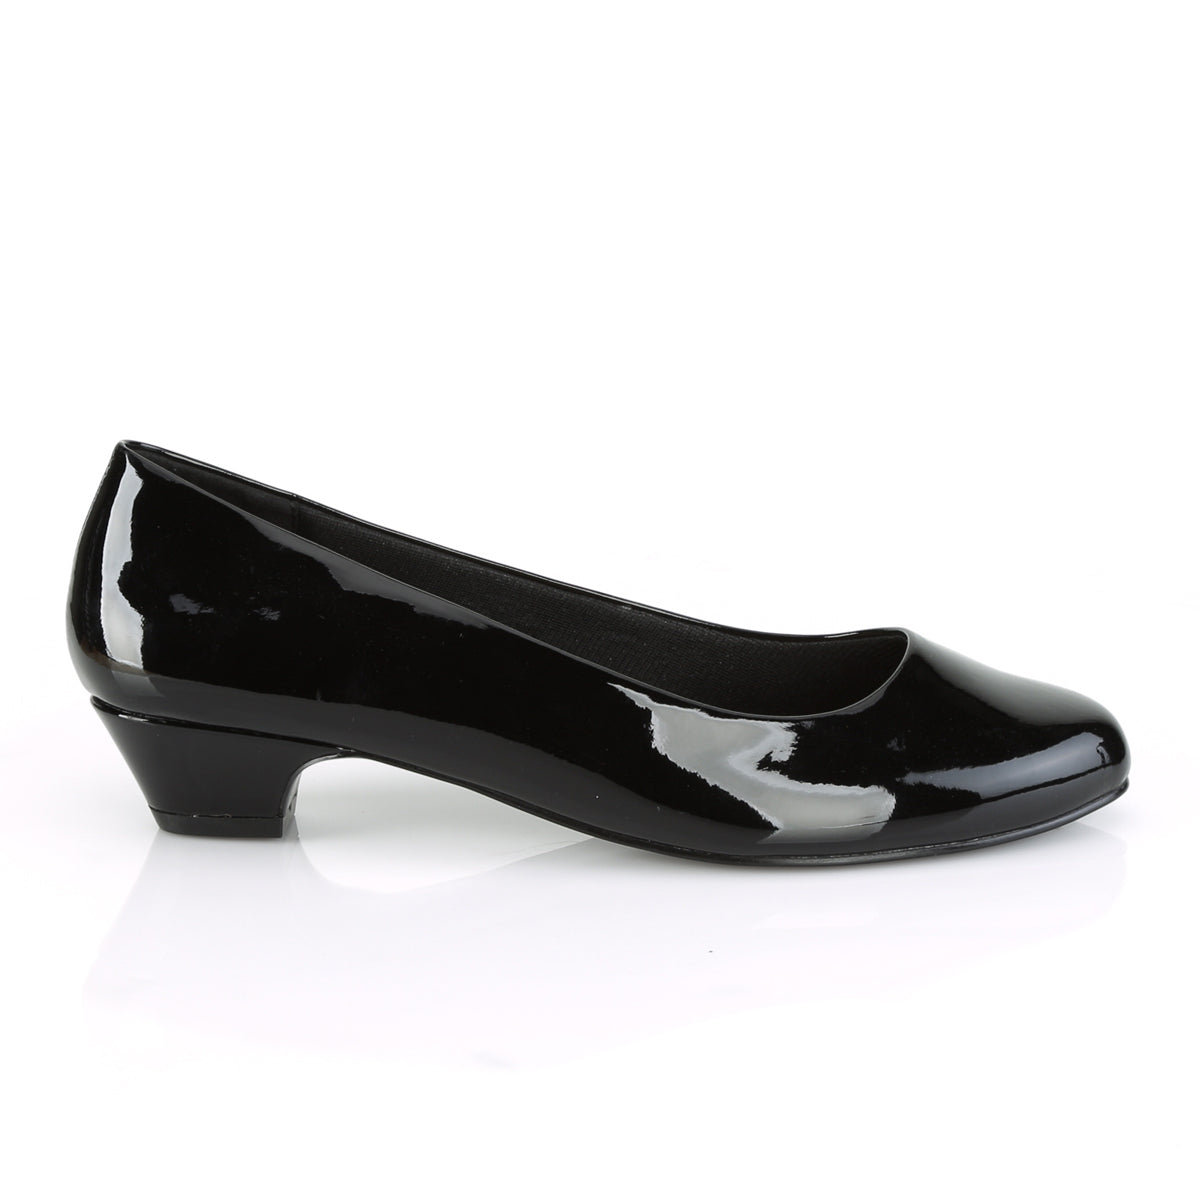 1 inch heel black shoes, Women's Fashion, Footwear, Heels on Carousell